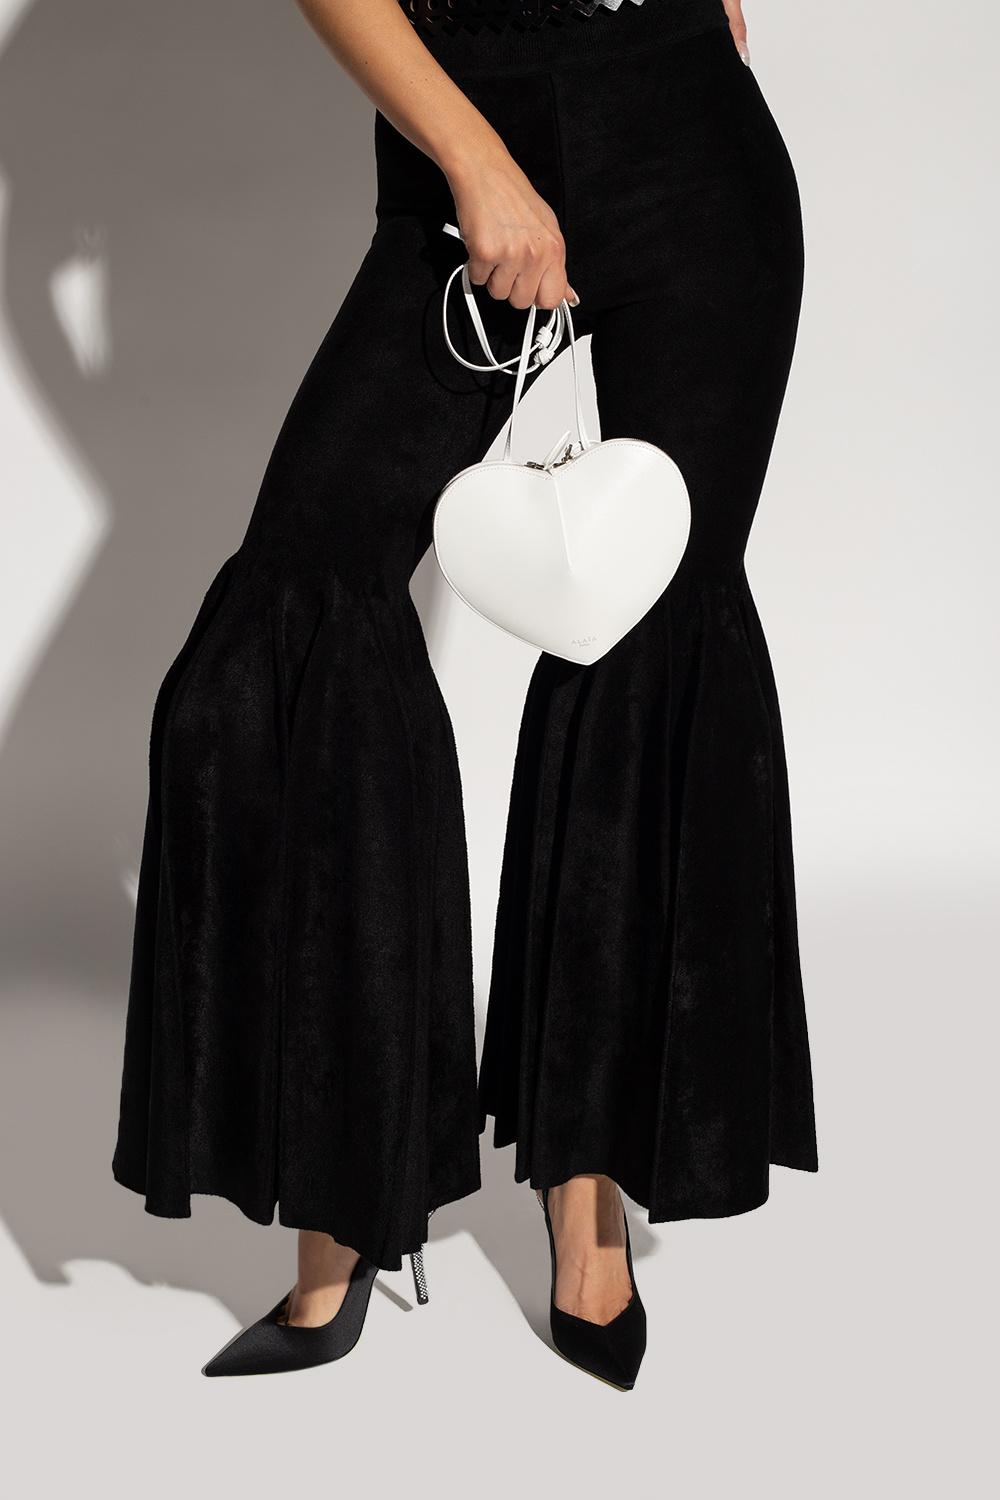 Alaïa 'coeur' Shoulder Bag in Black | Lyst